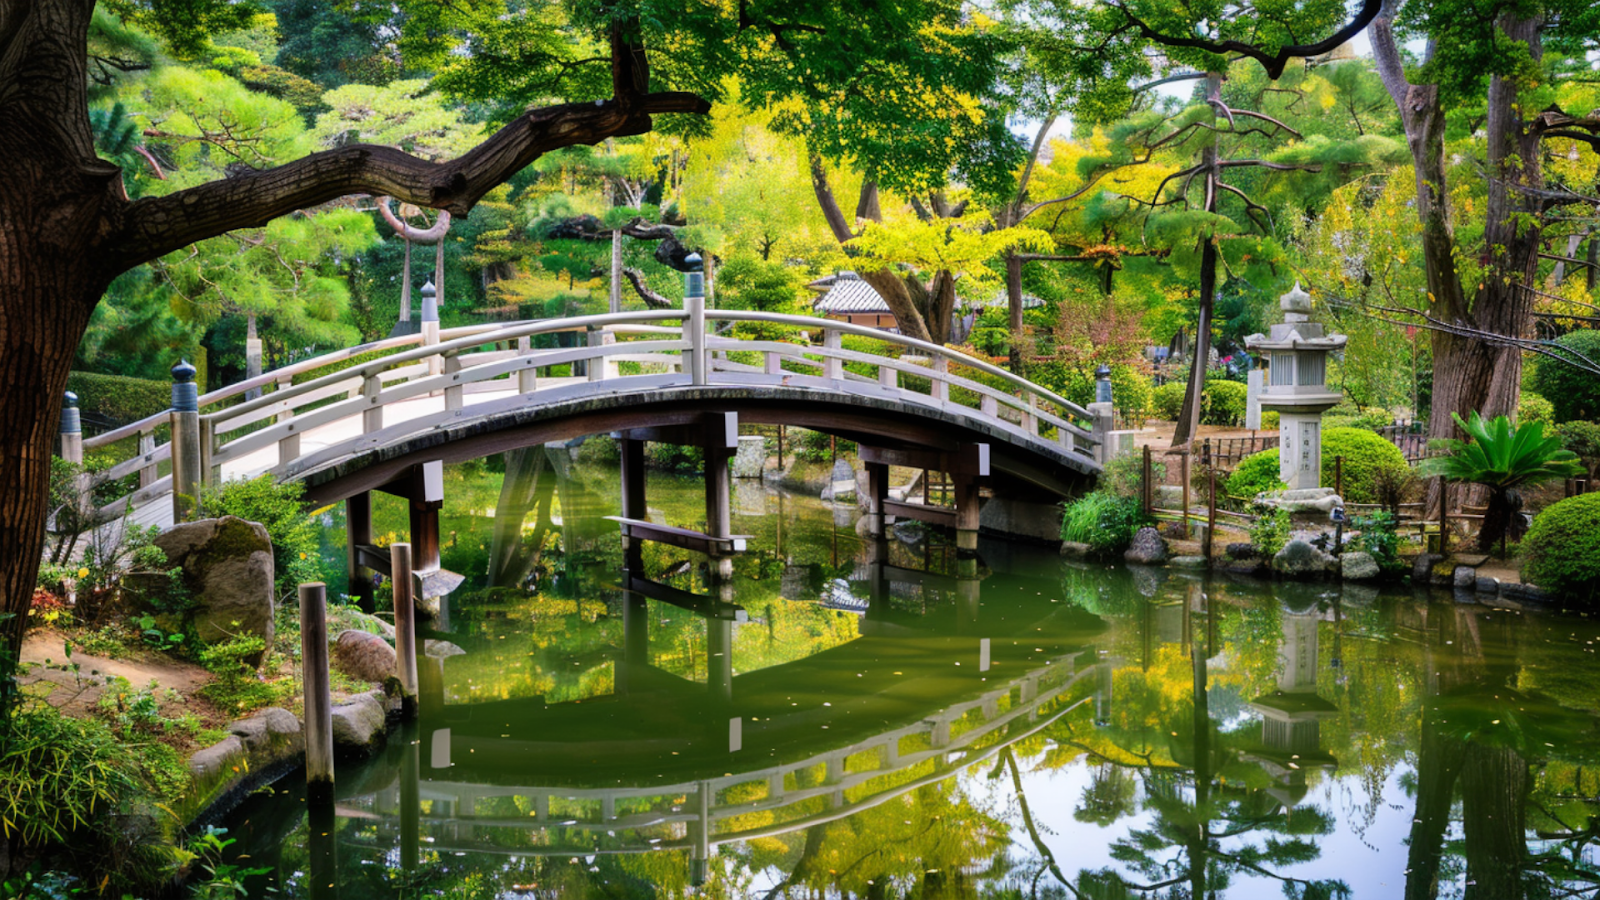 An arch bridge at a Shinto shrine in Osaka, Japan